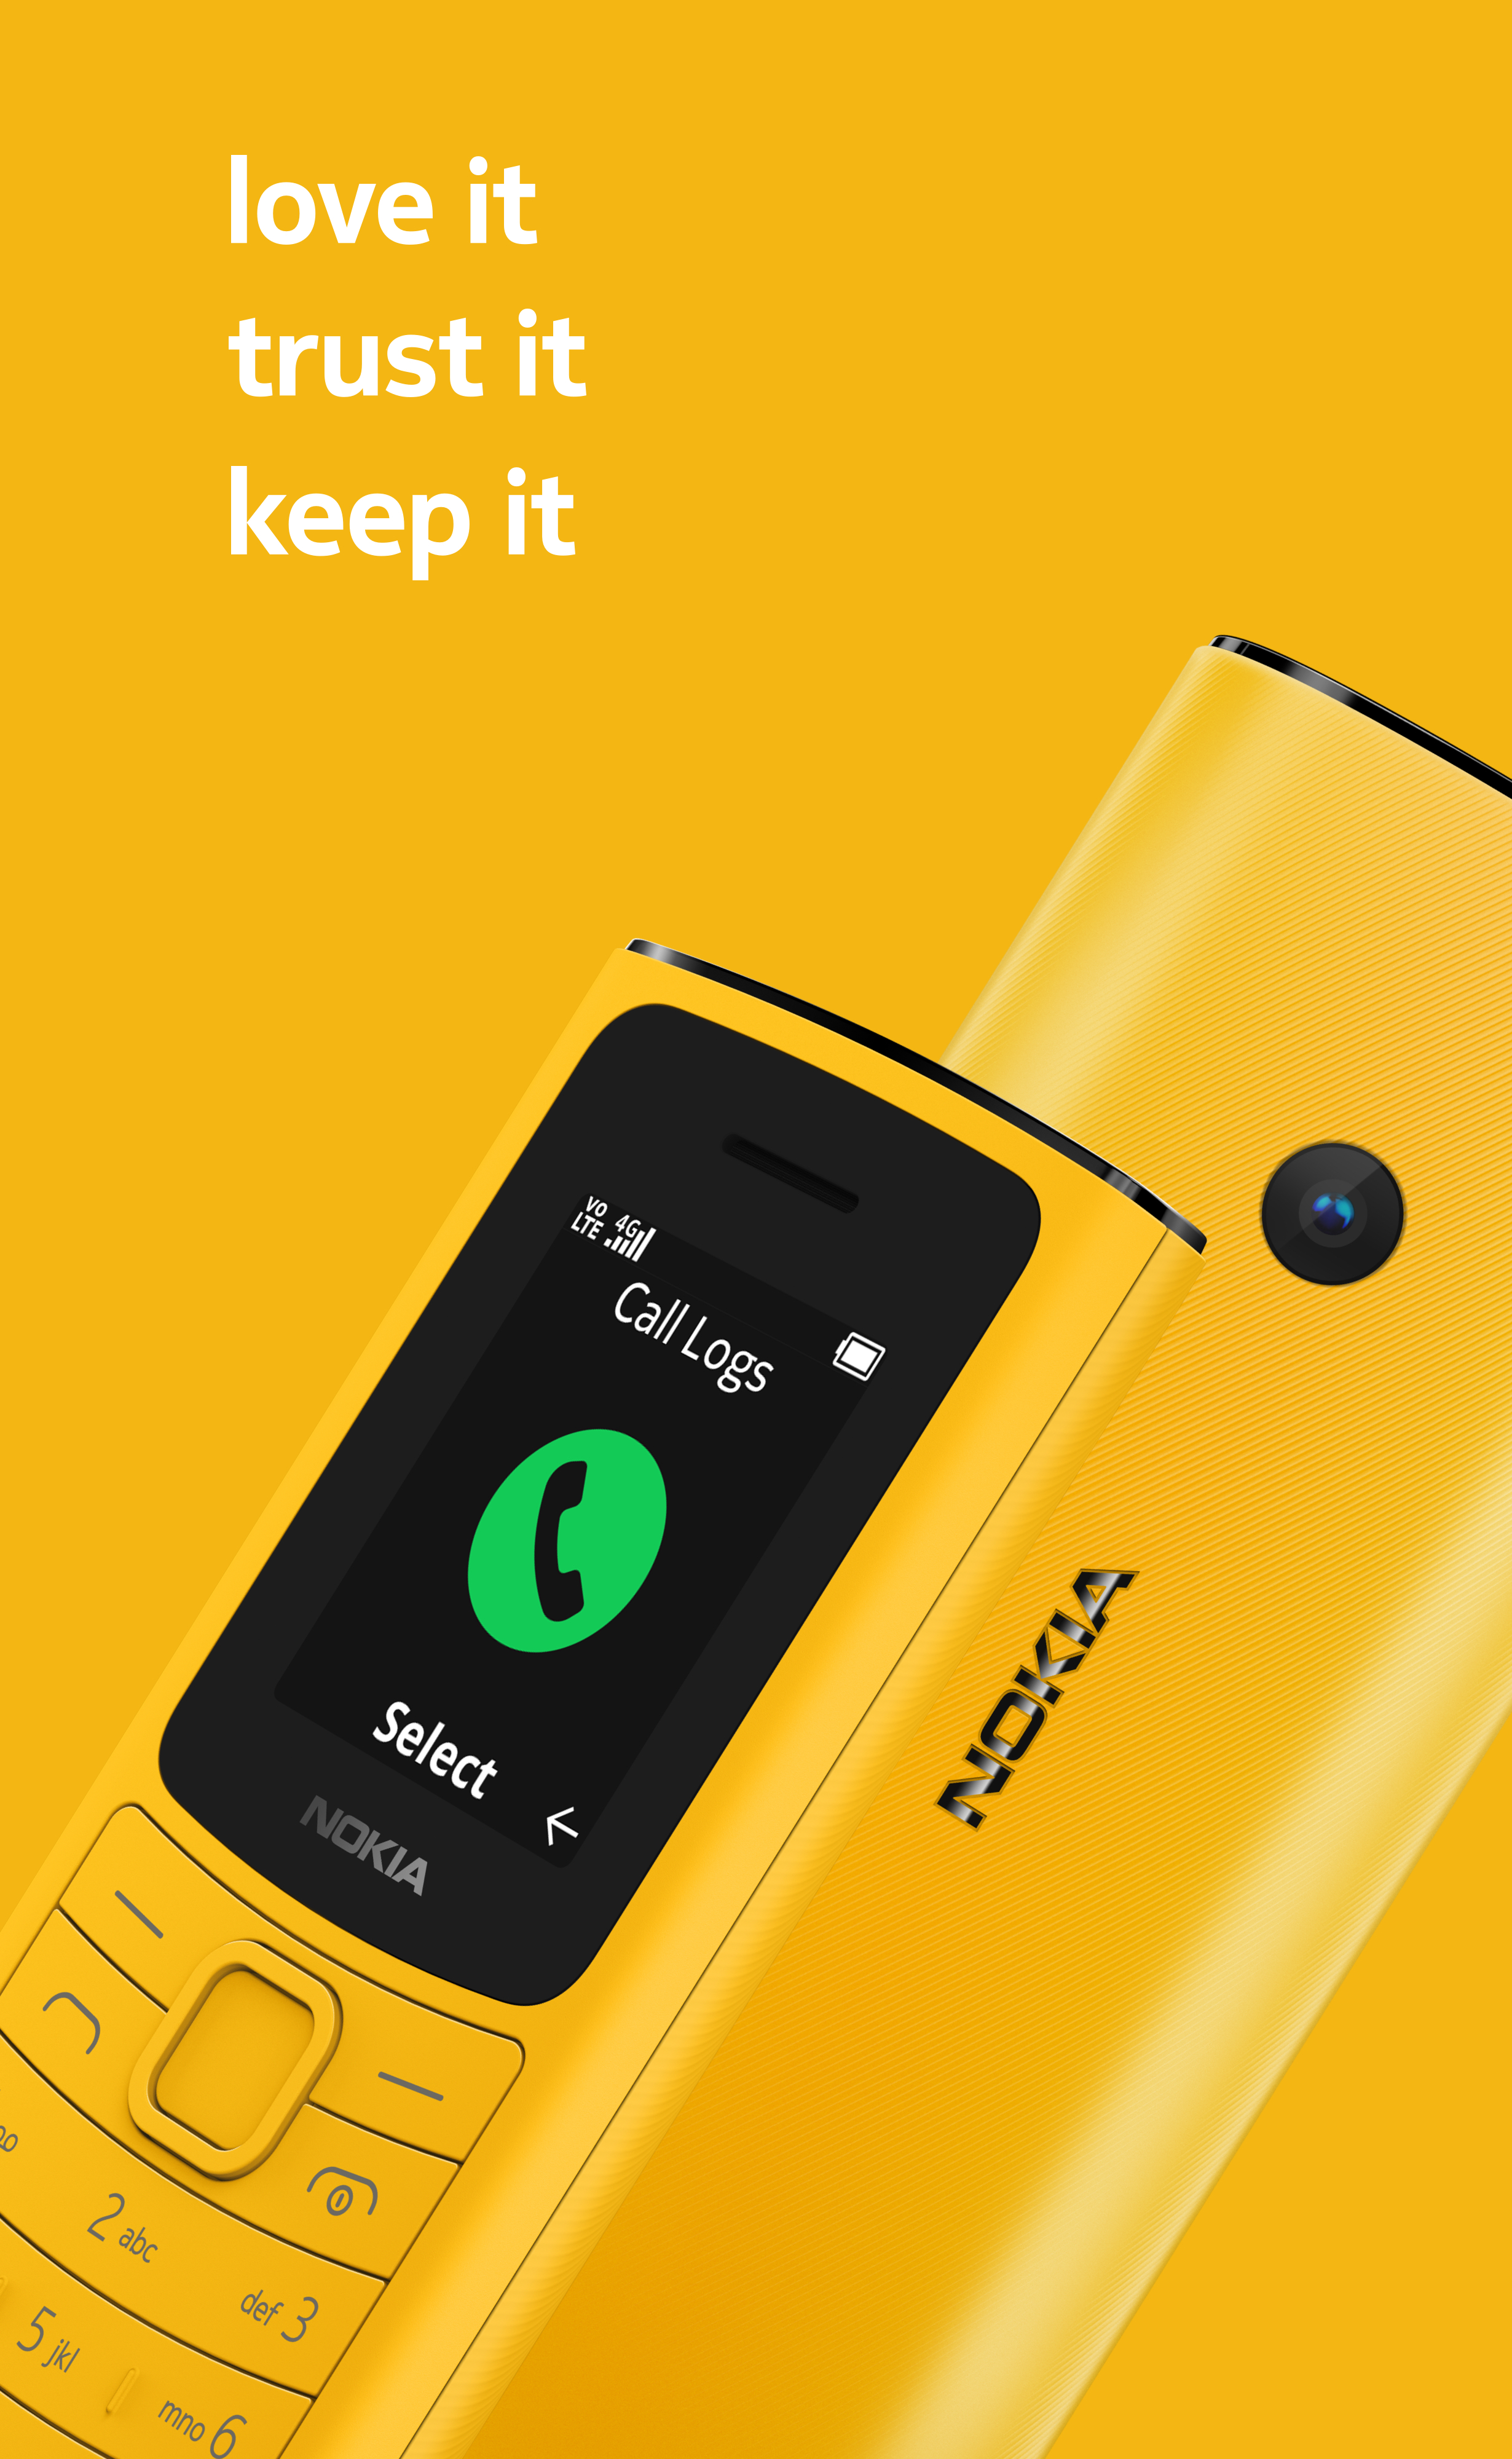 Nokia 110 4G là sự lựa chọn tuyệt vời cho những ai đang tìm kiếm một chiếc điện thoại cơ bản nhưng đầy đủ các tính năng hiện đại. Với kết nối 4G nhanh chóng, Nokia 110 4G còn có thể chụp ảnh, nghe nhạc, và xem video một cách suôn sẻ. Hãy xem hình ảnh để biết thêm chi tiết.